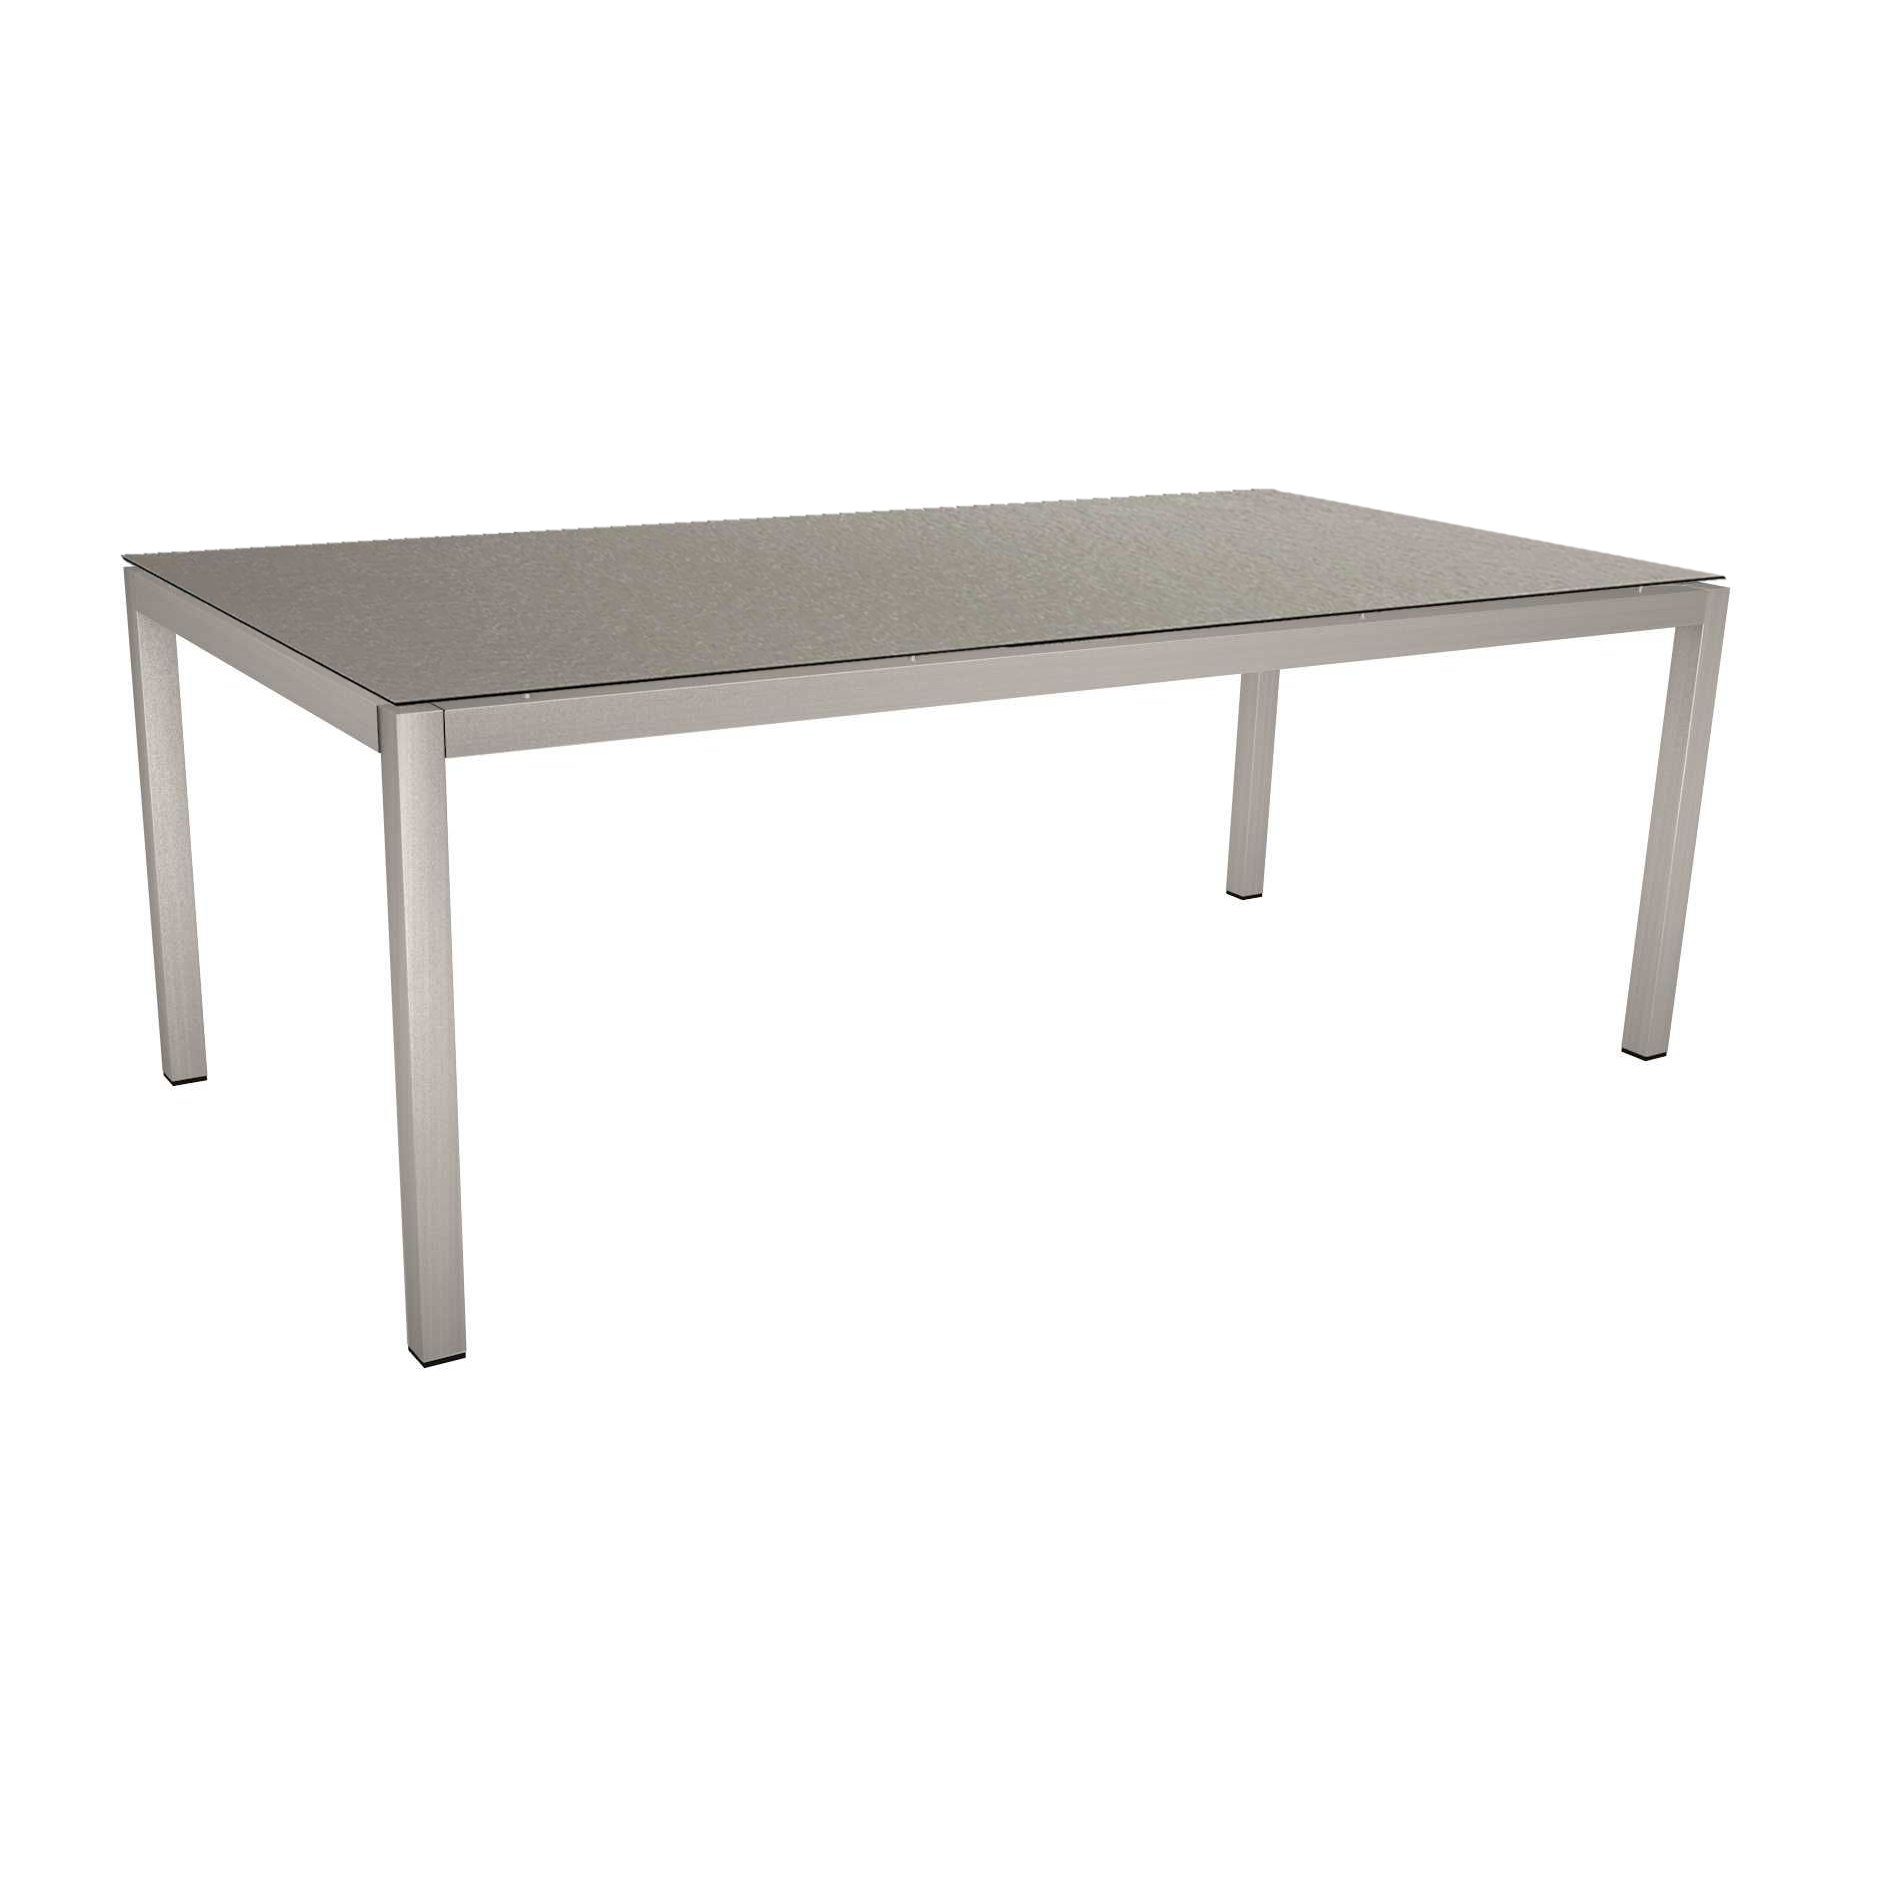 Stern Tischsystem, Gestell Edelstahl Vierkantrohr, Tischplatte HPL Uni grau, 200x100 cm